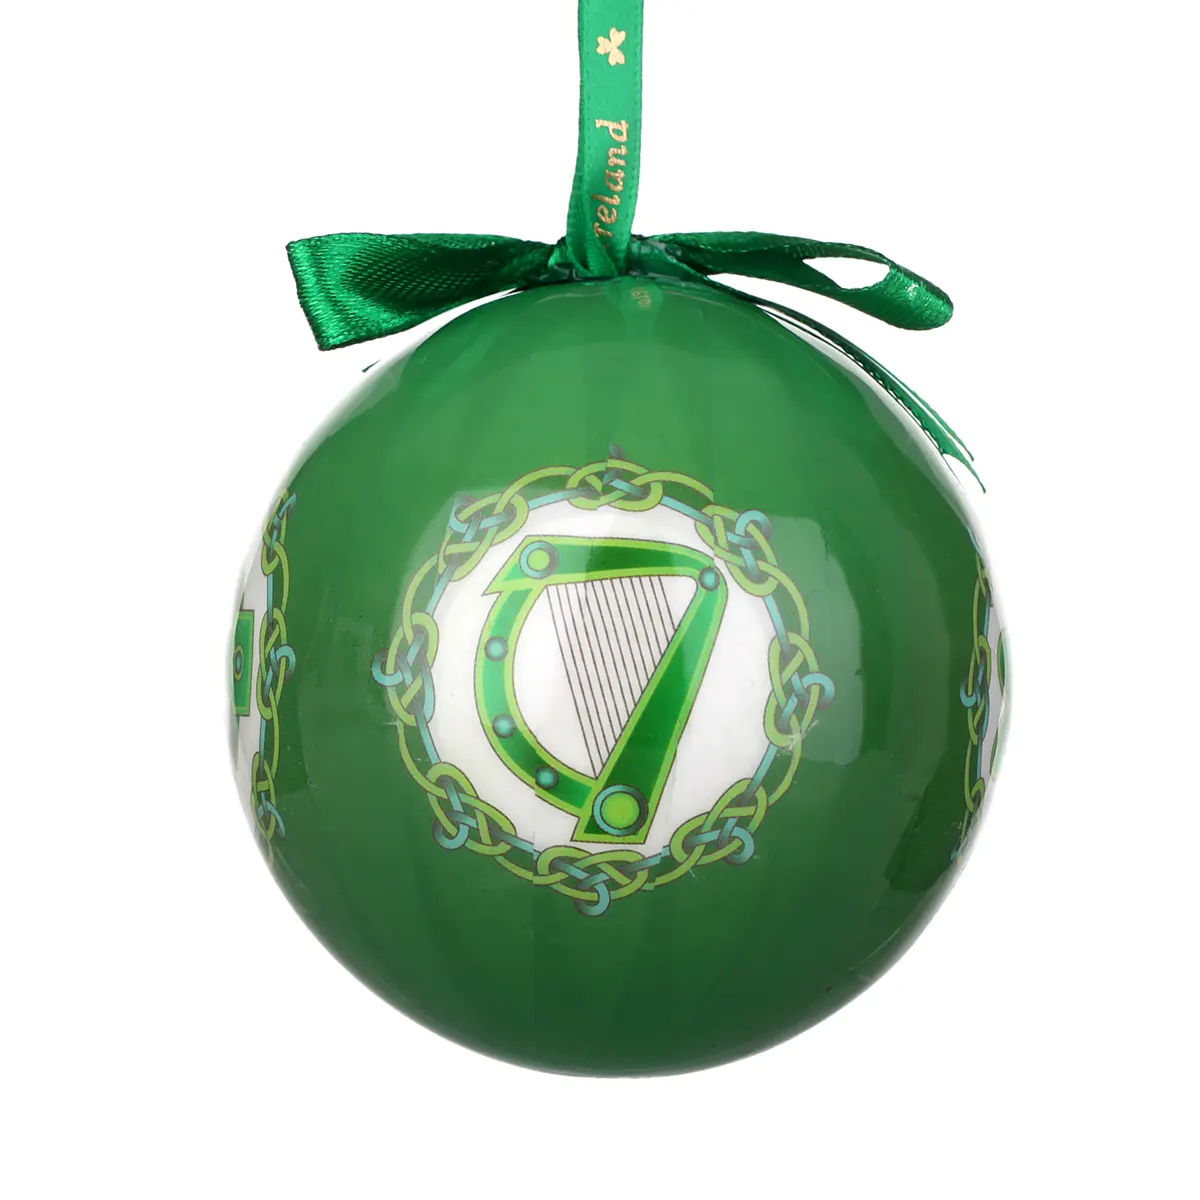 Irish Symbols - Traditionell handgefertigte Weihnachtskugel aus Irland mit vier irischen Symbolen